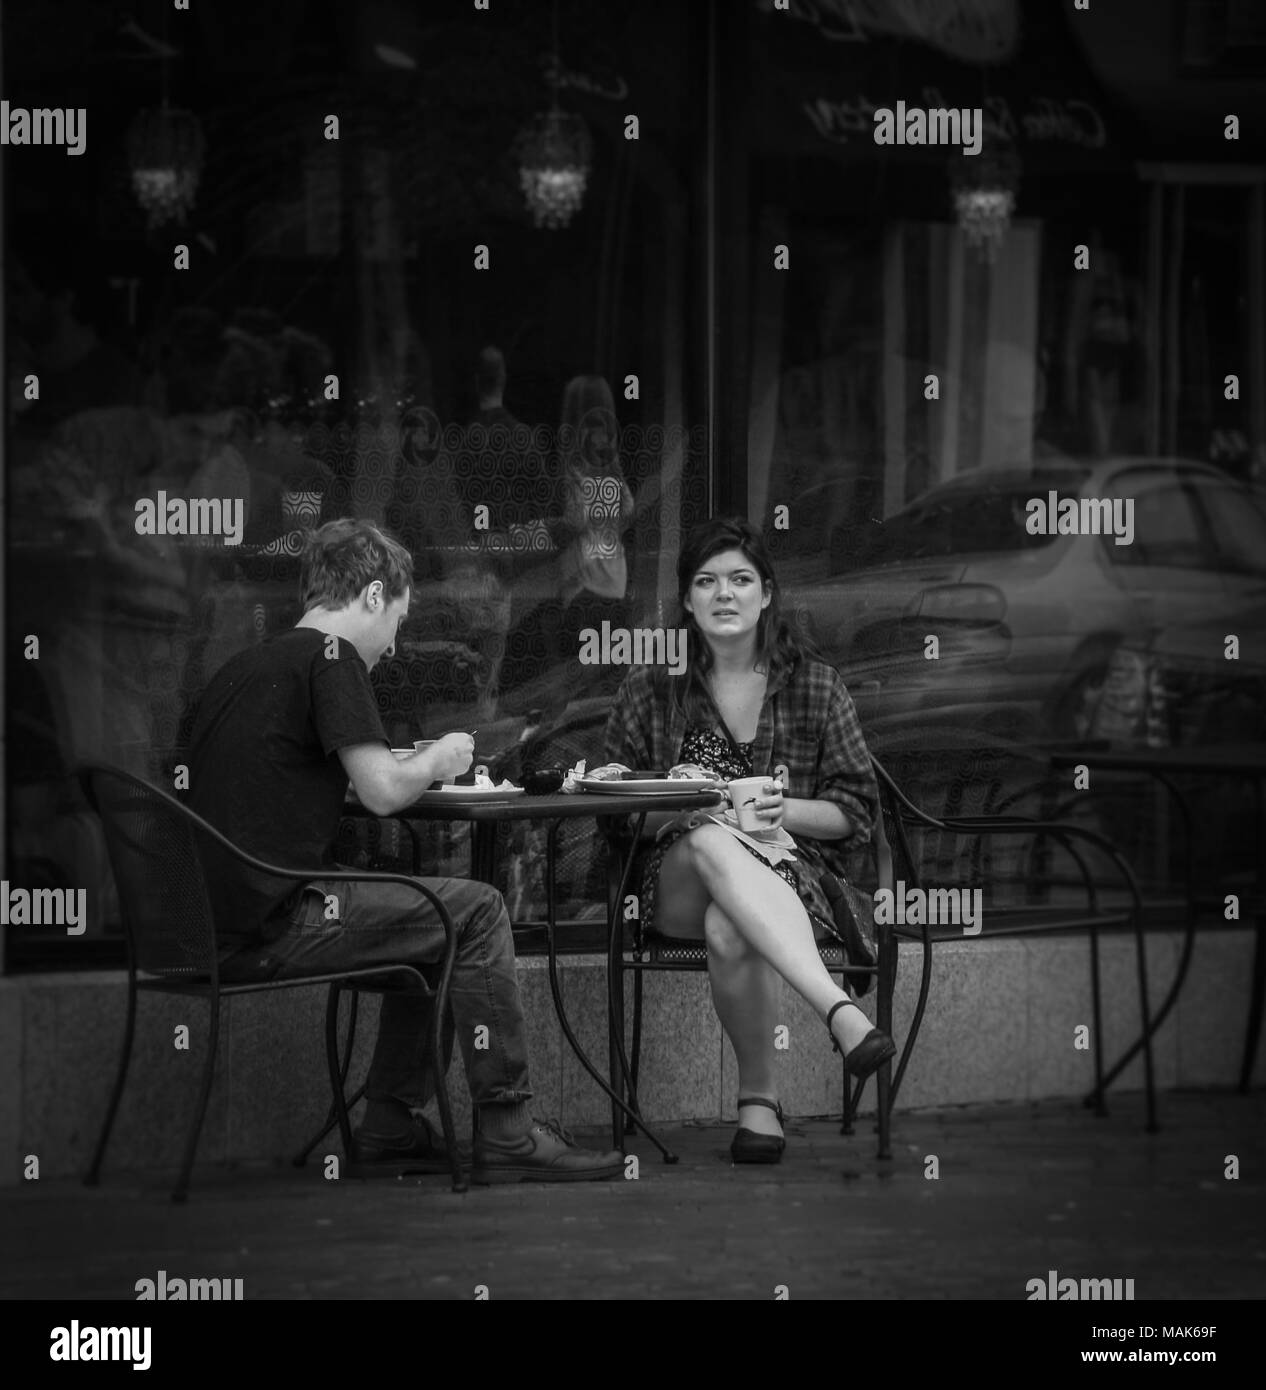 Junger Mann und Frau beim Mittagessen in einer Tabelle außerhalb Restaurant; vorbeifahrende Autos in das Glas hinter dem Paar widerspiegeln; die Frau nachdenklich schaut Stockfoto